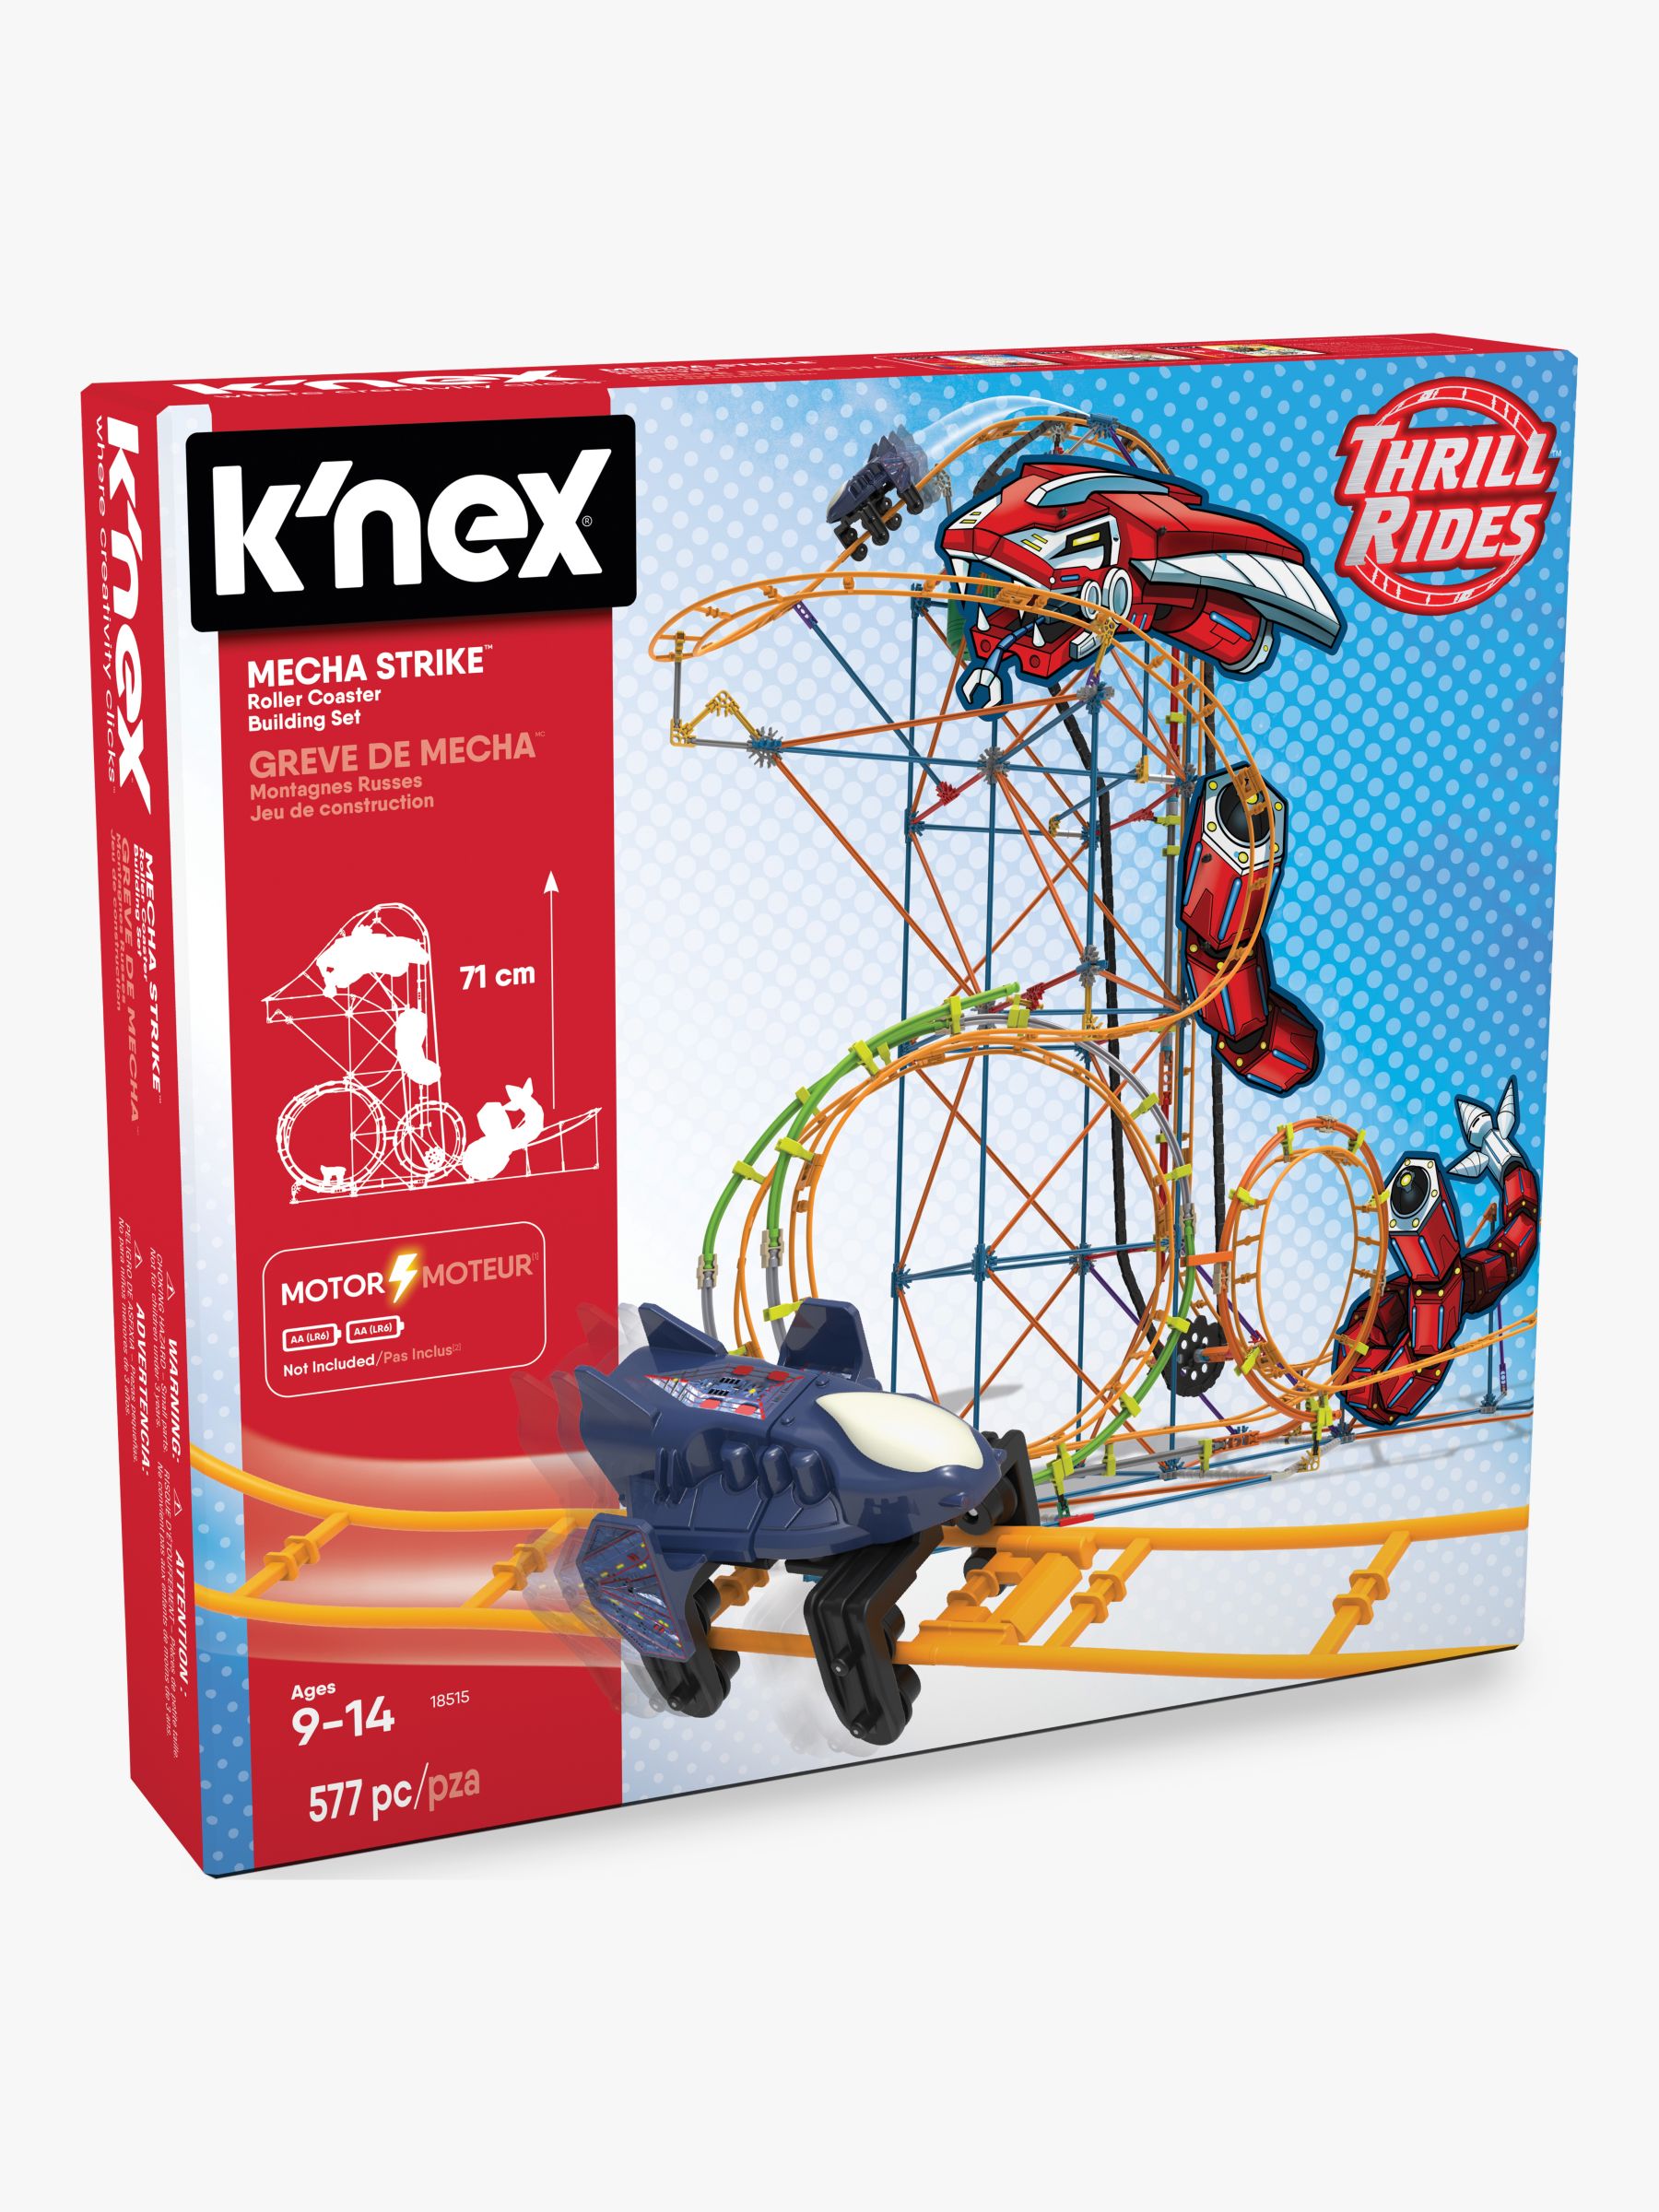 K Nex Thrill Rides Mecha Strike Roller